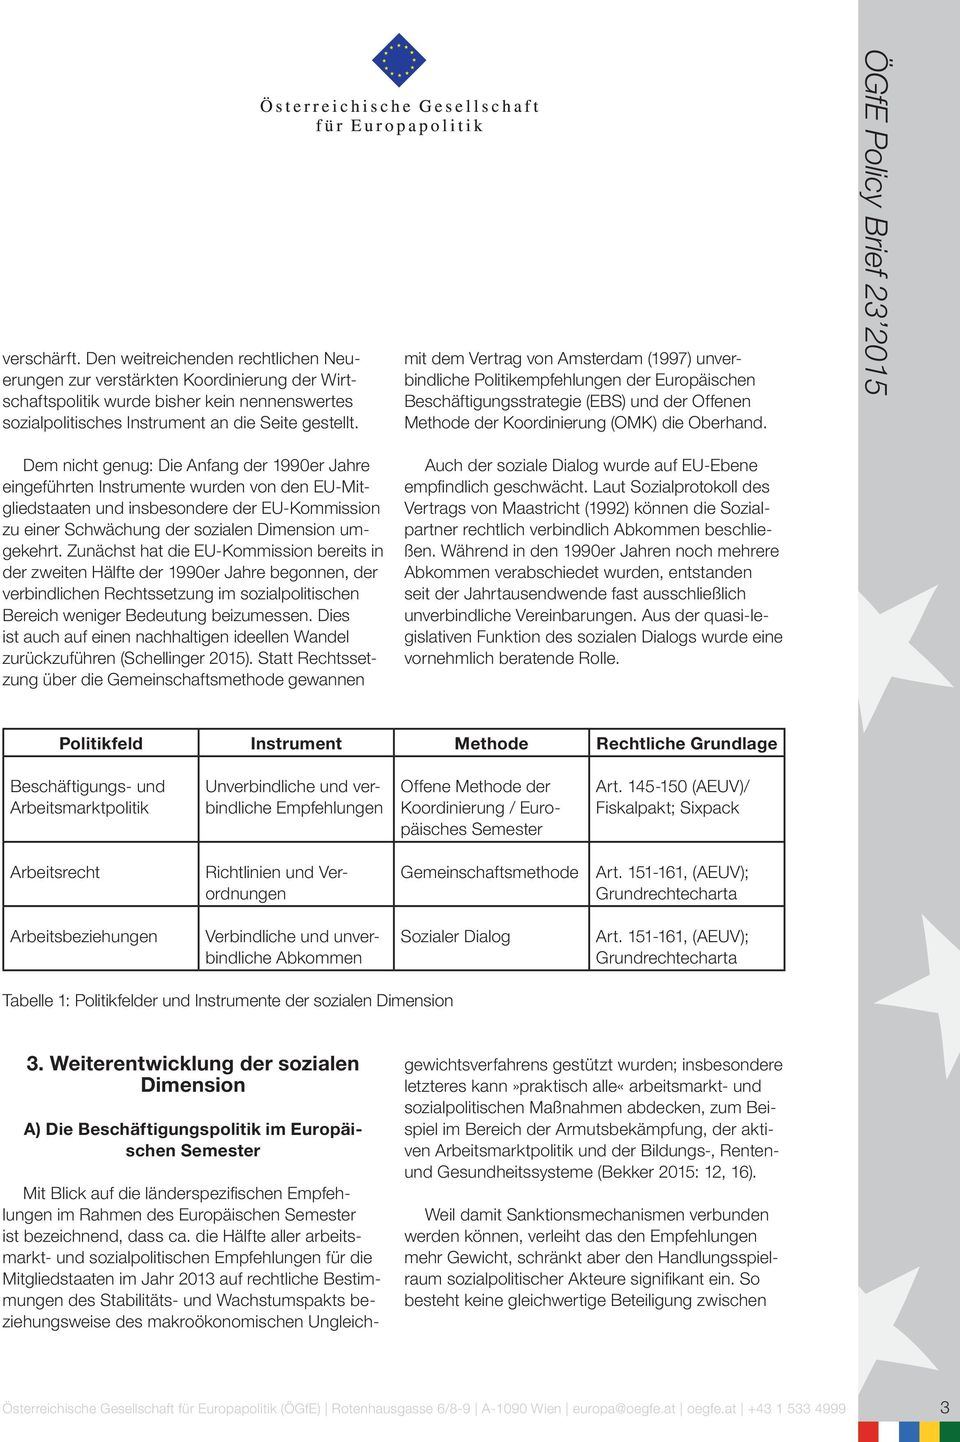 ÖGfE Policy Brief 23 2015 Dem nicht genug: Die Anfang der 1990er Jahre eingeführten Instrumente wurden von den EU-Mitgliedstaaten und insbesondere der EU-Kommission zu einer Schwächung der sozialen